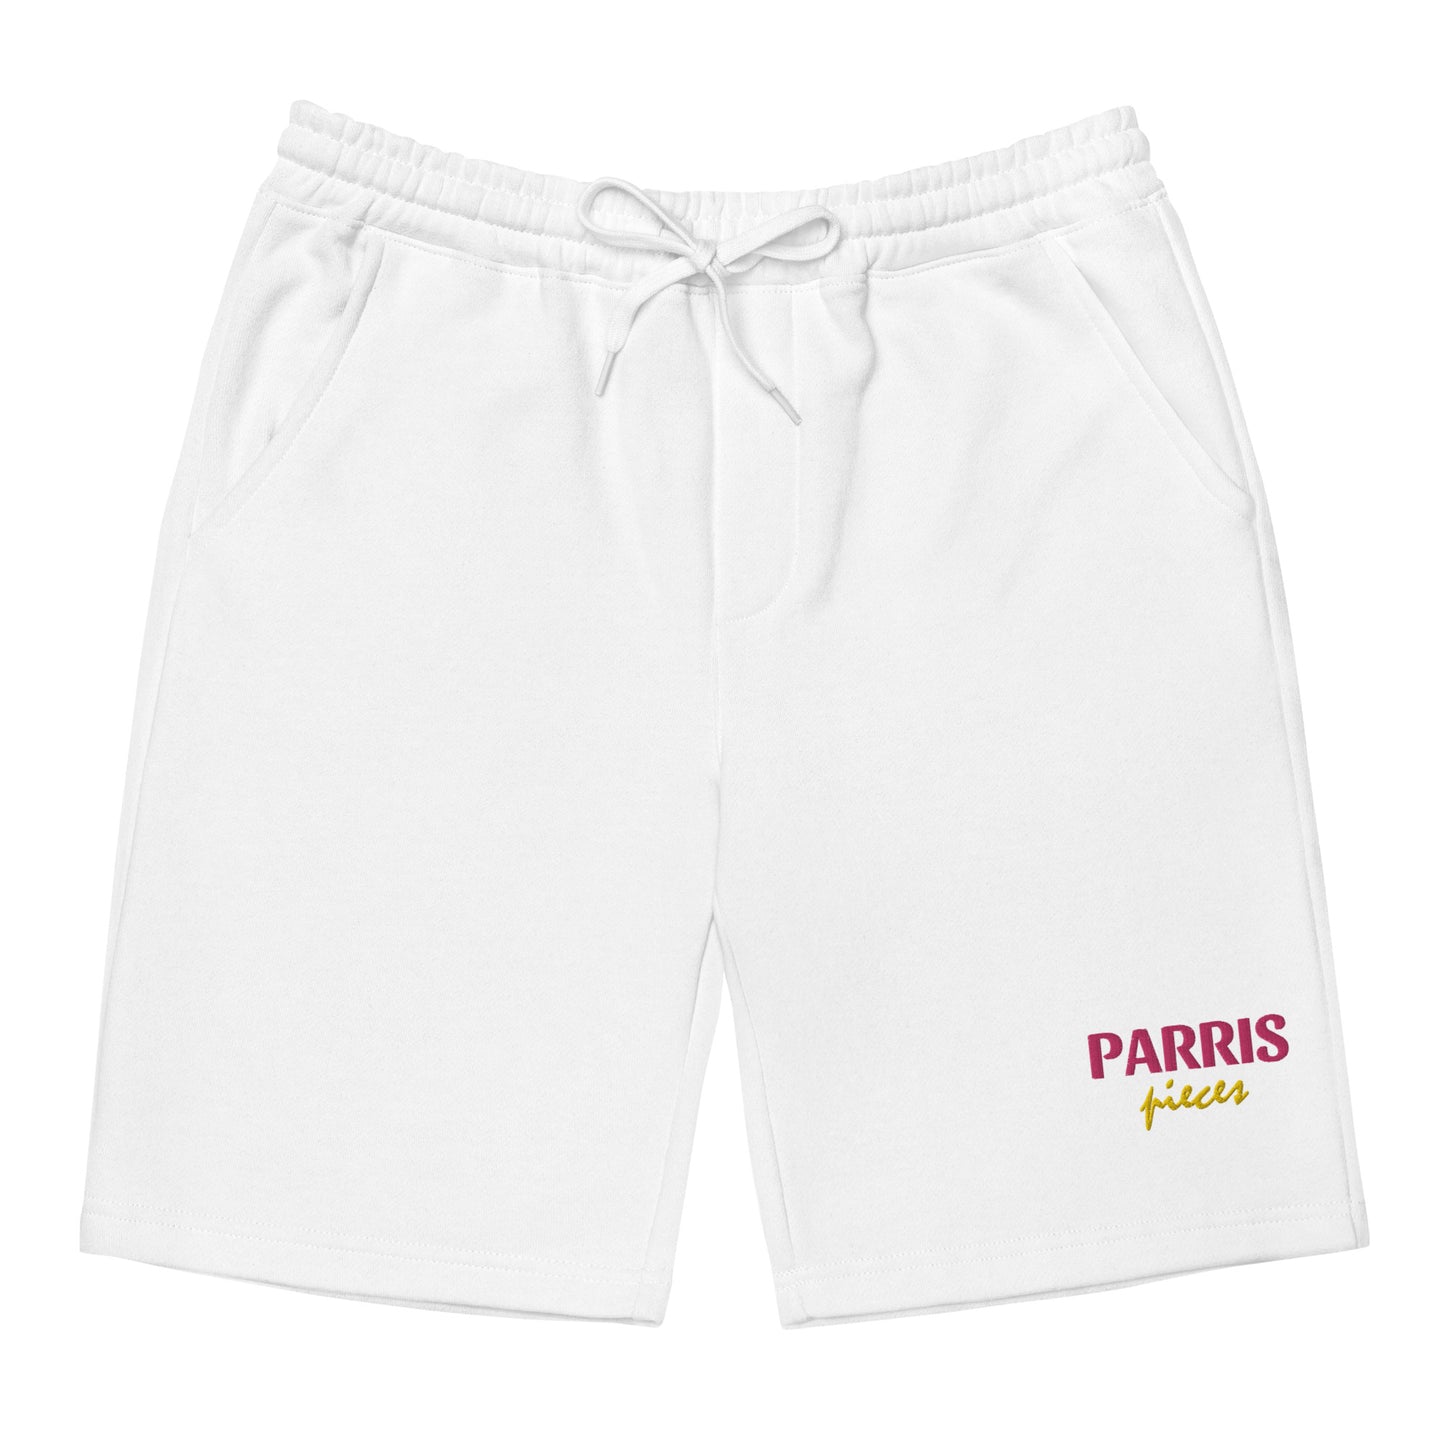 PARRISPIECES Fleece Shorts - ParrisPieces